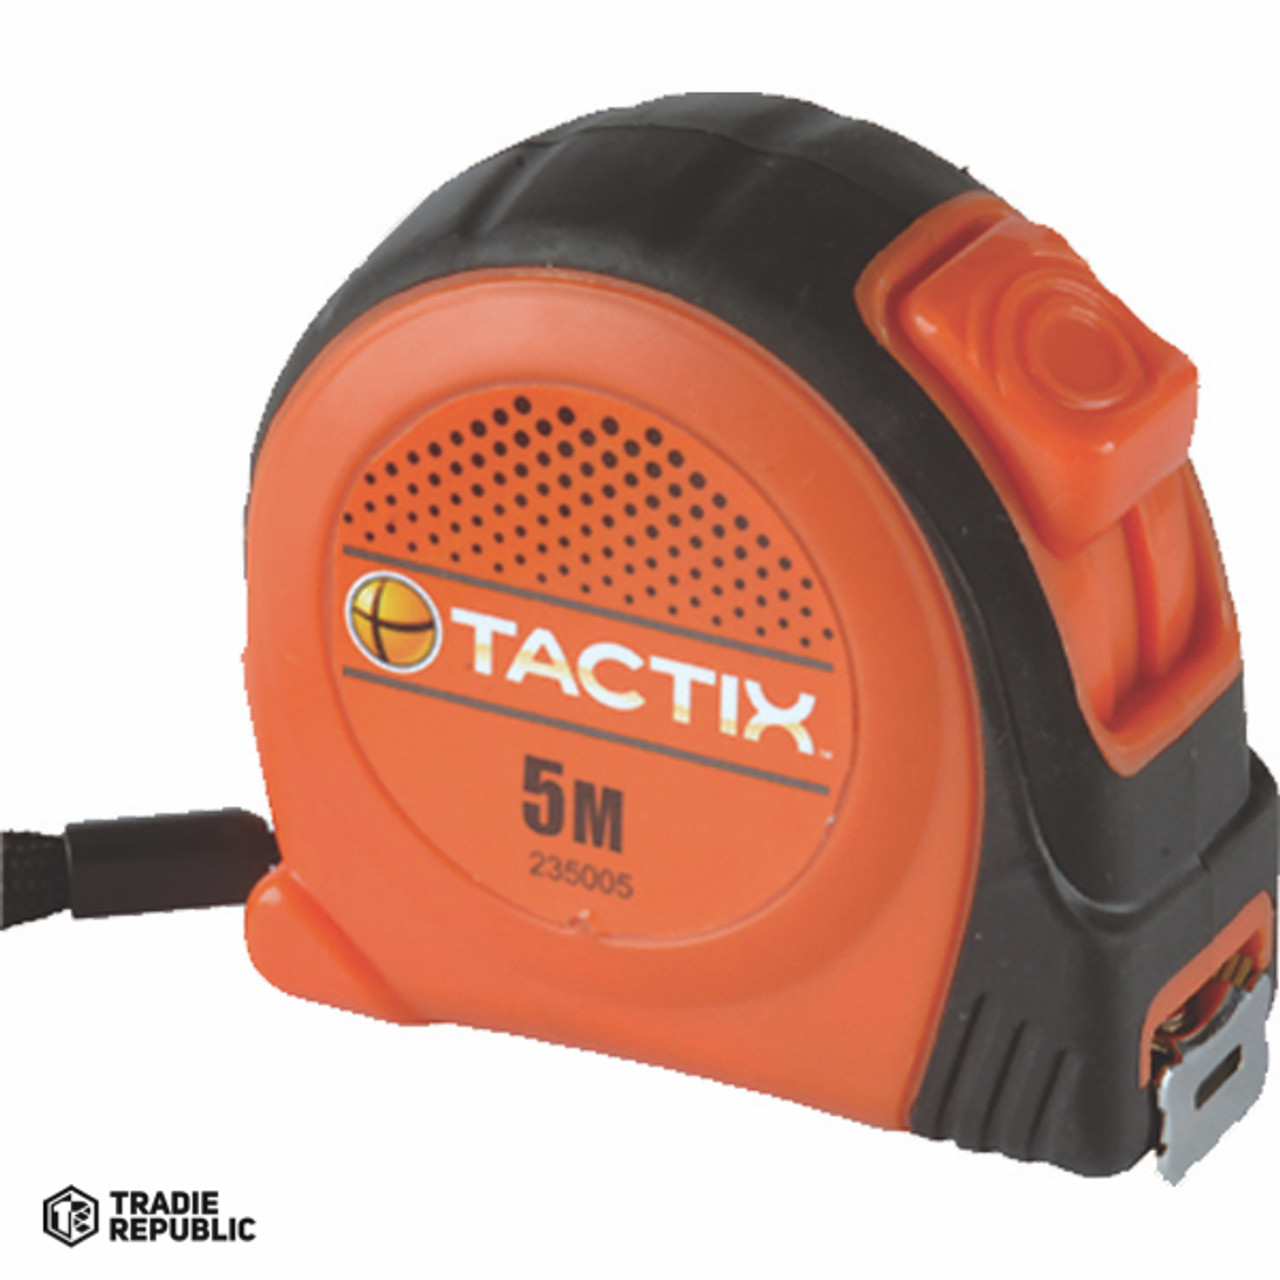 235085 Tactix Tape Measure 5m x 19mm - Basic